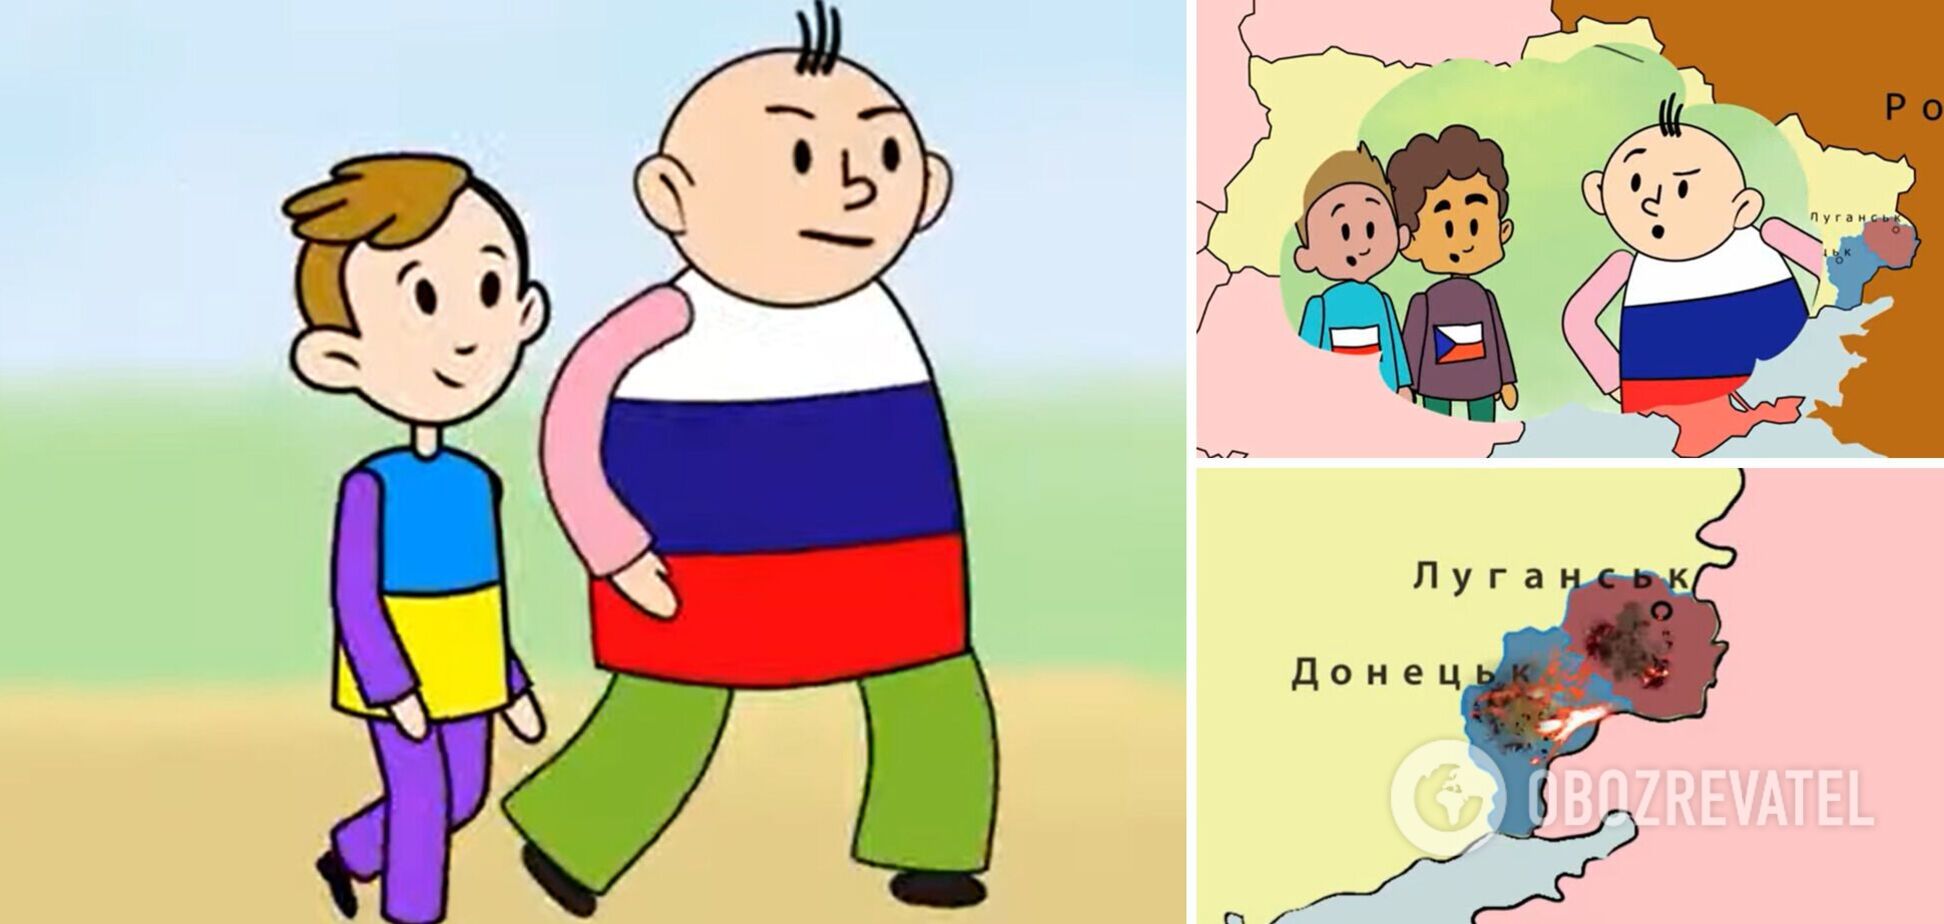 Украинцы создали свой мультфильм об Иване и Николае в ответ на кремлевскую пропаганду